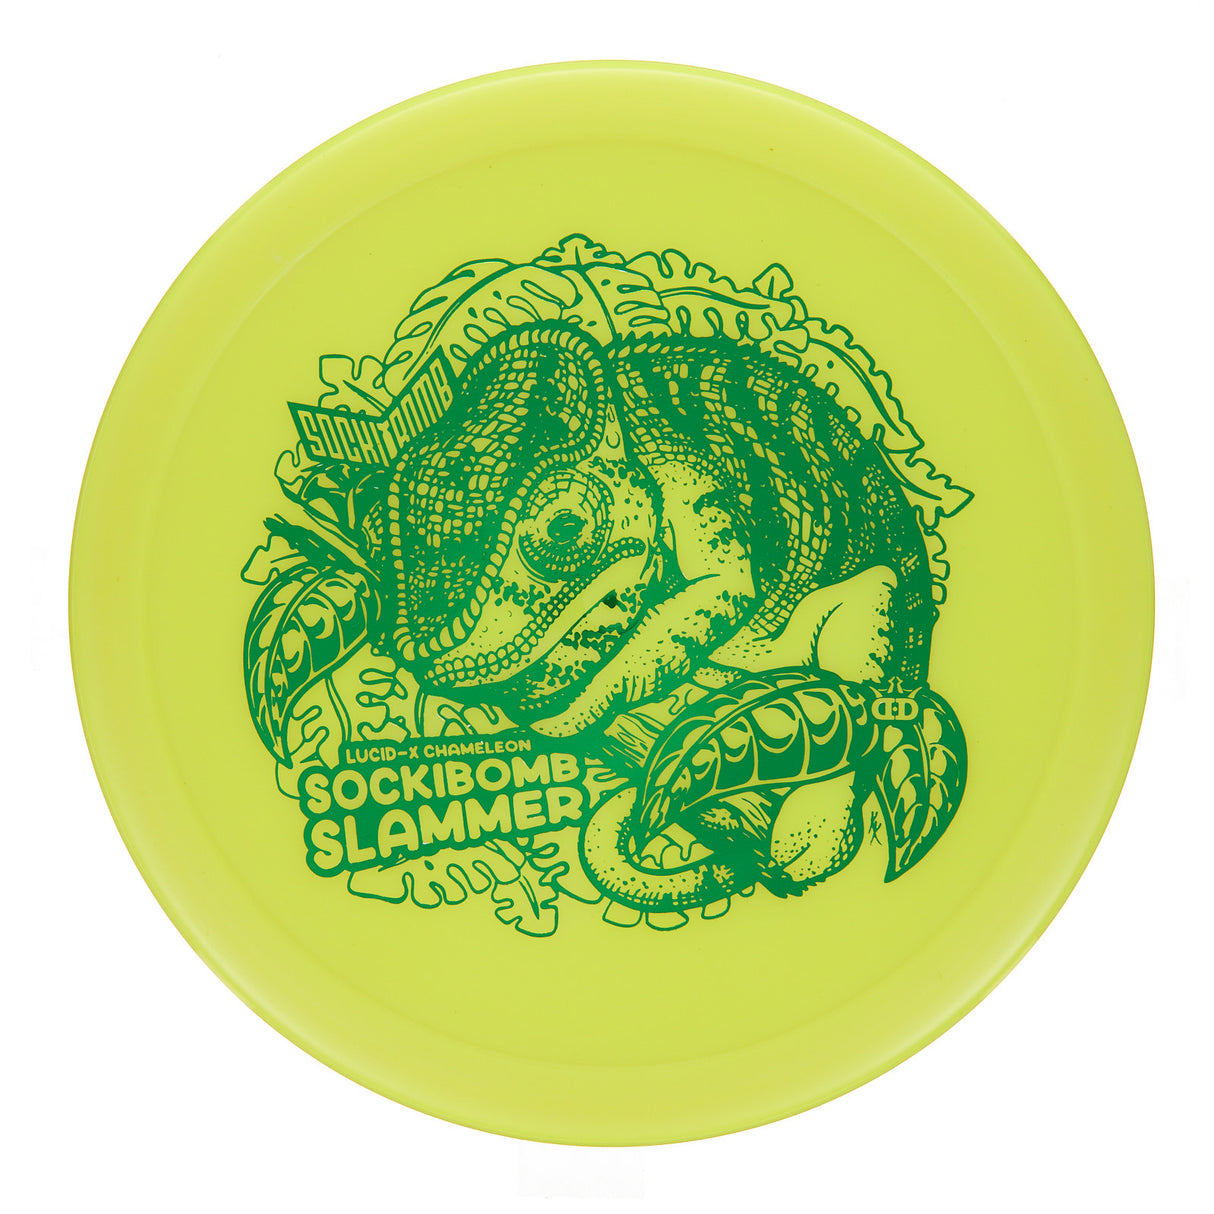 Dynamic Discs Sockibomb Slammer - Lucid-X Chameleon  174g | Style 0001